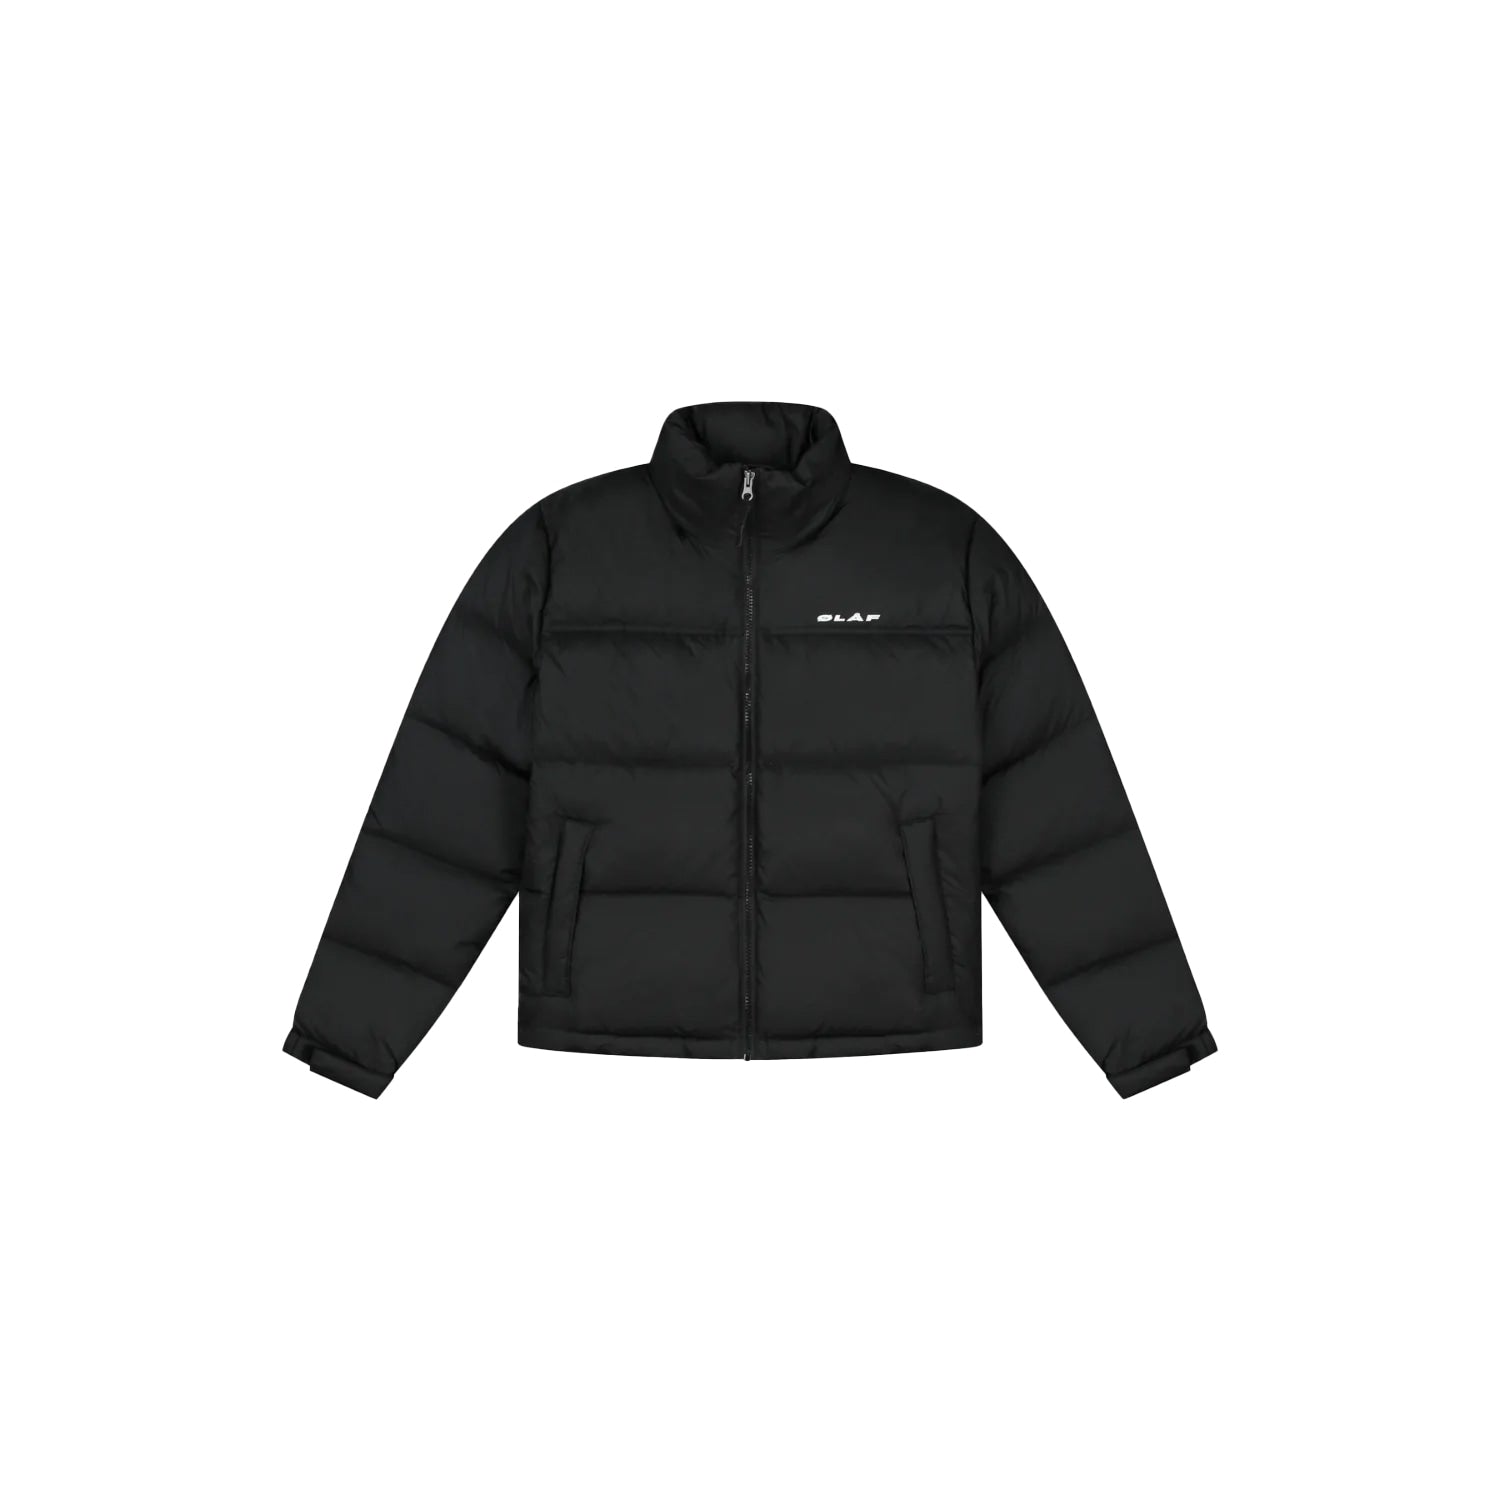 olaf_olaf puffer jacket_black_1_4